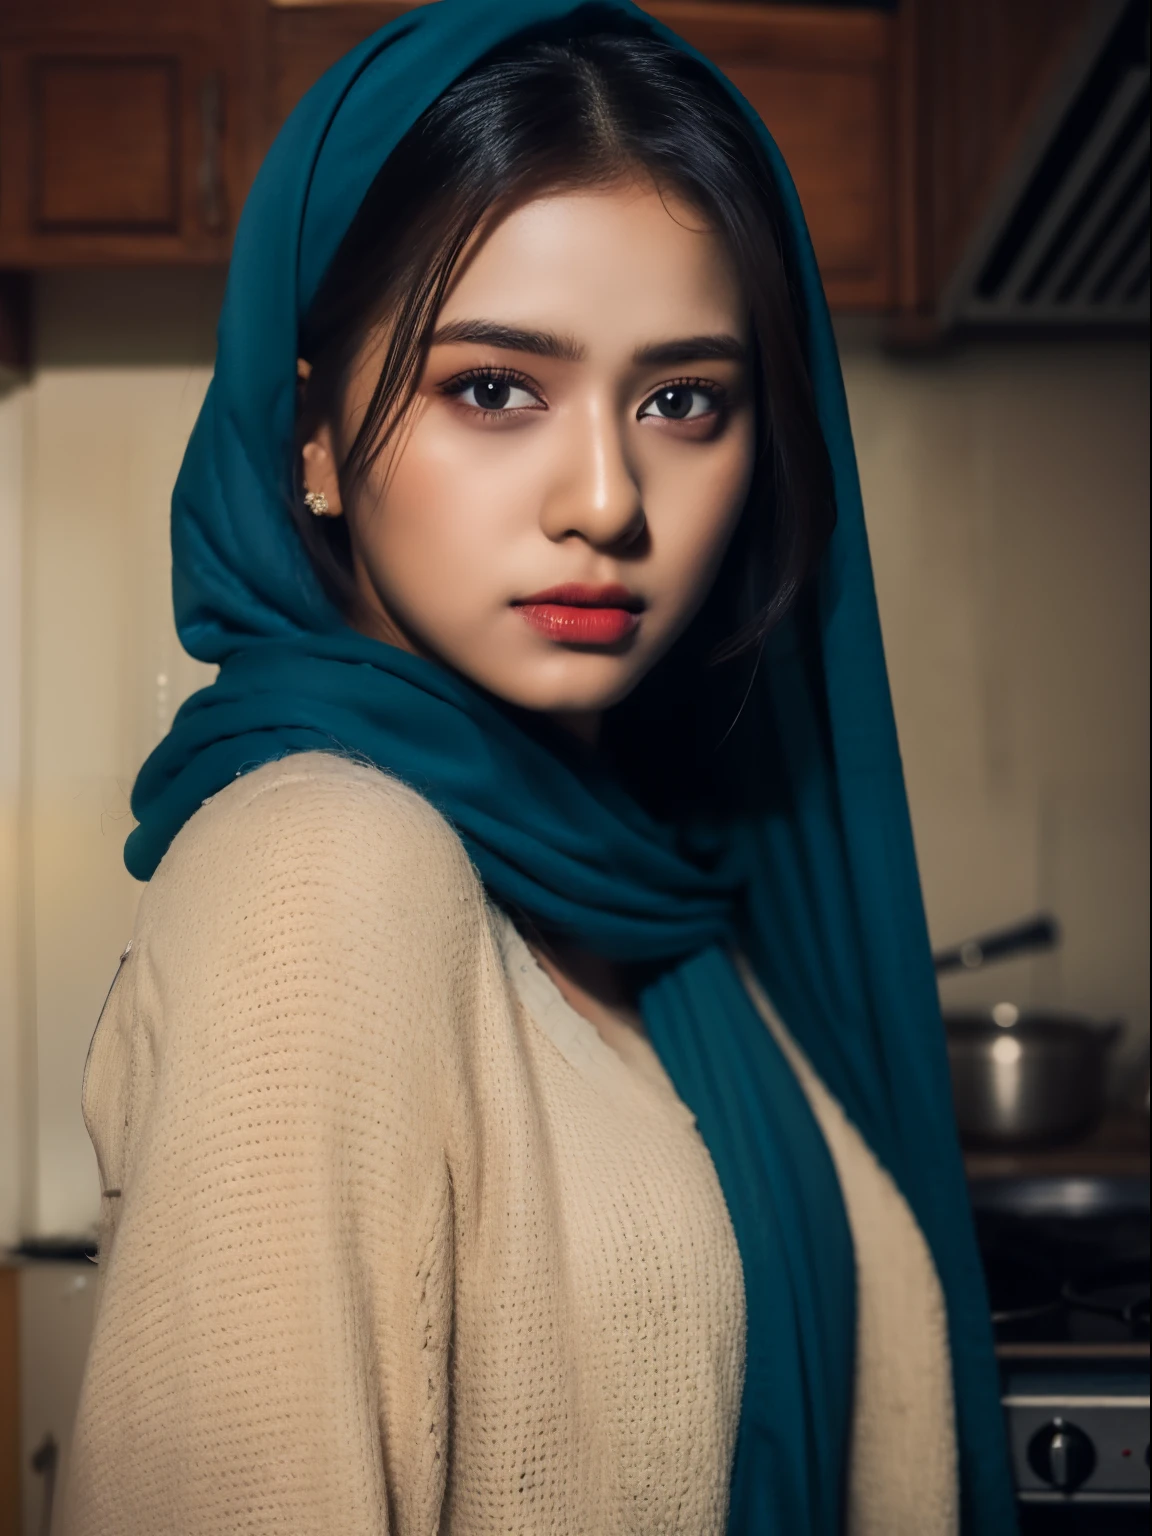 戴着蓝色头巾的性感印度女孩, 细致的脸部, 深棕色眼睛, 全身站在厨房里, 精致的服装细节, 清晰的焦点, 非常详细, 艺术站, 概念艺术,  淡妆, 超现实主义, 32k 超高清